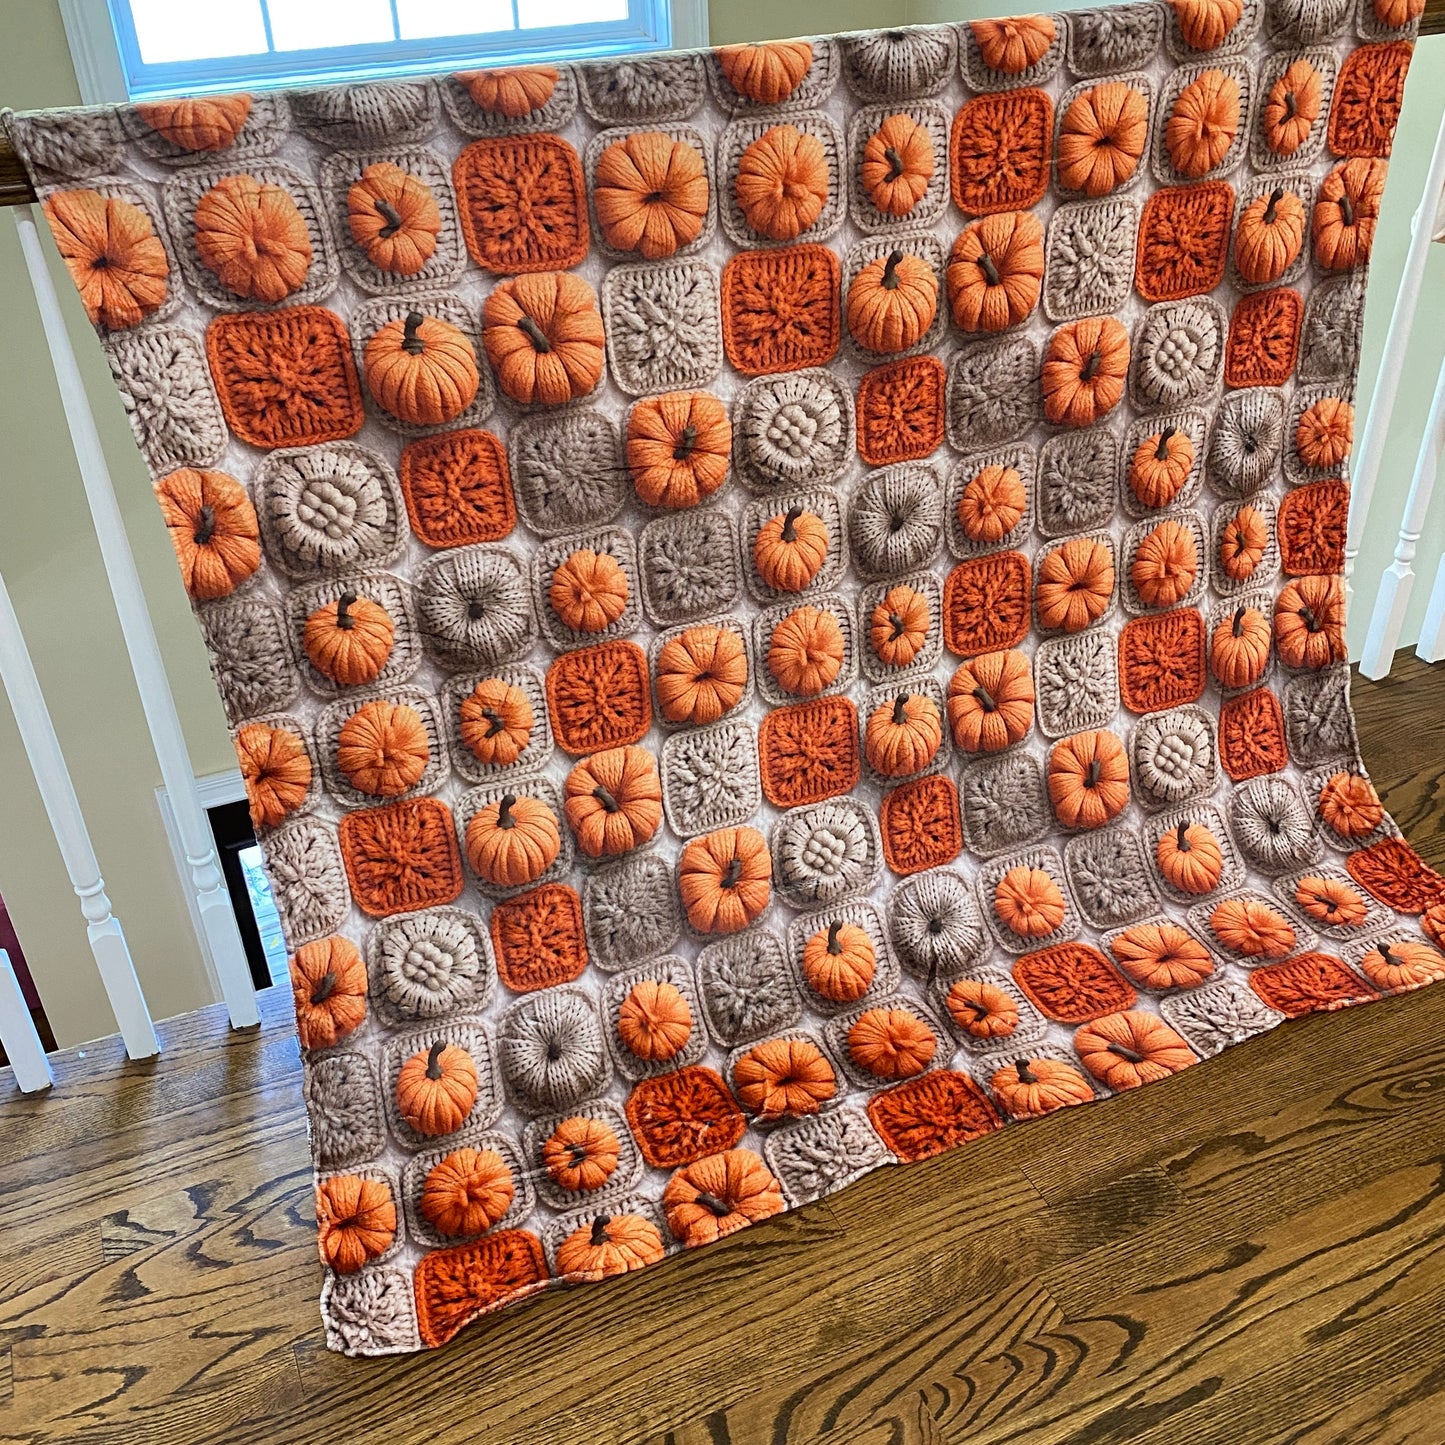 Set - Fall Knit Crochet Pumpkins